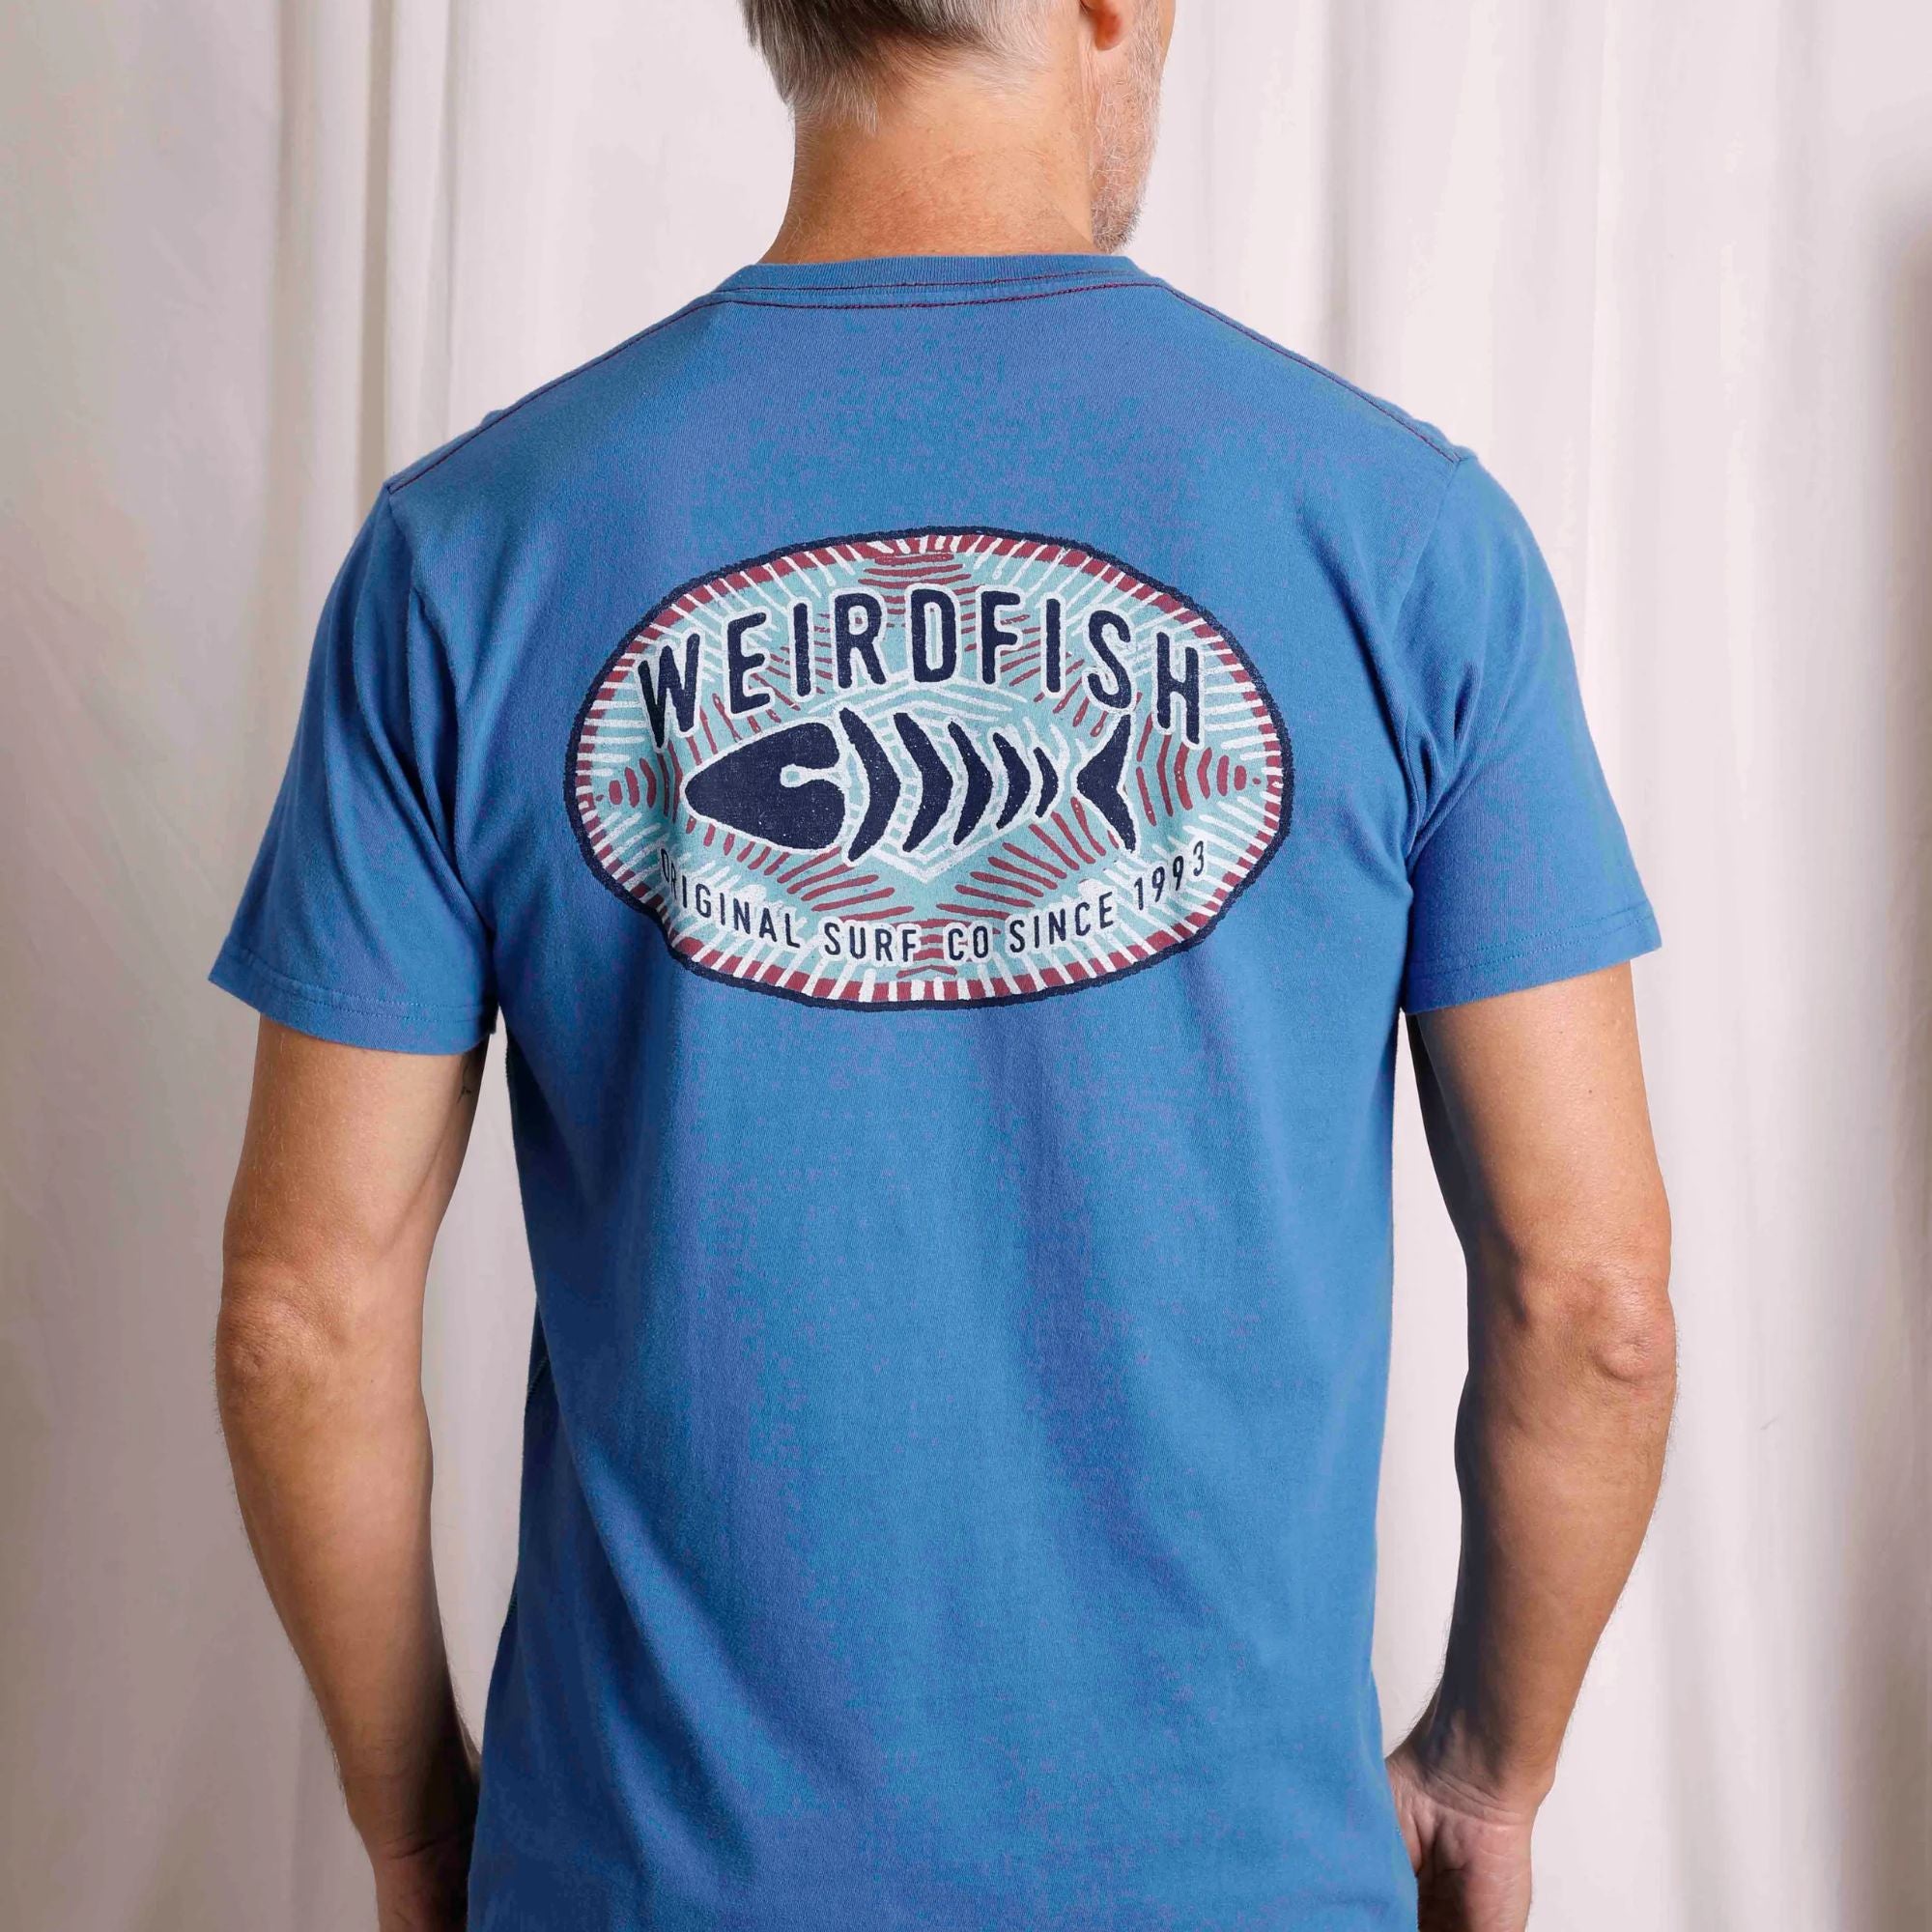 Weird Fish Original Surf Graphic T-Shirt